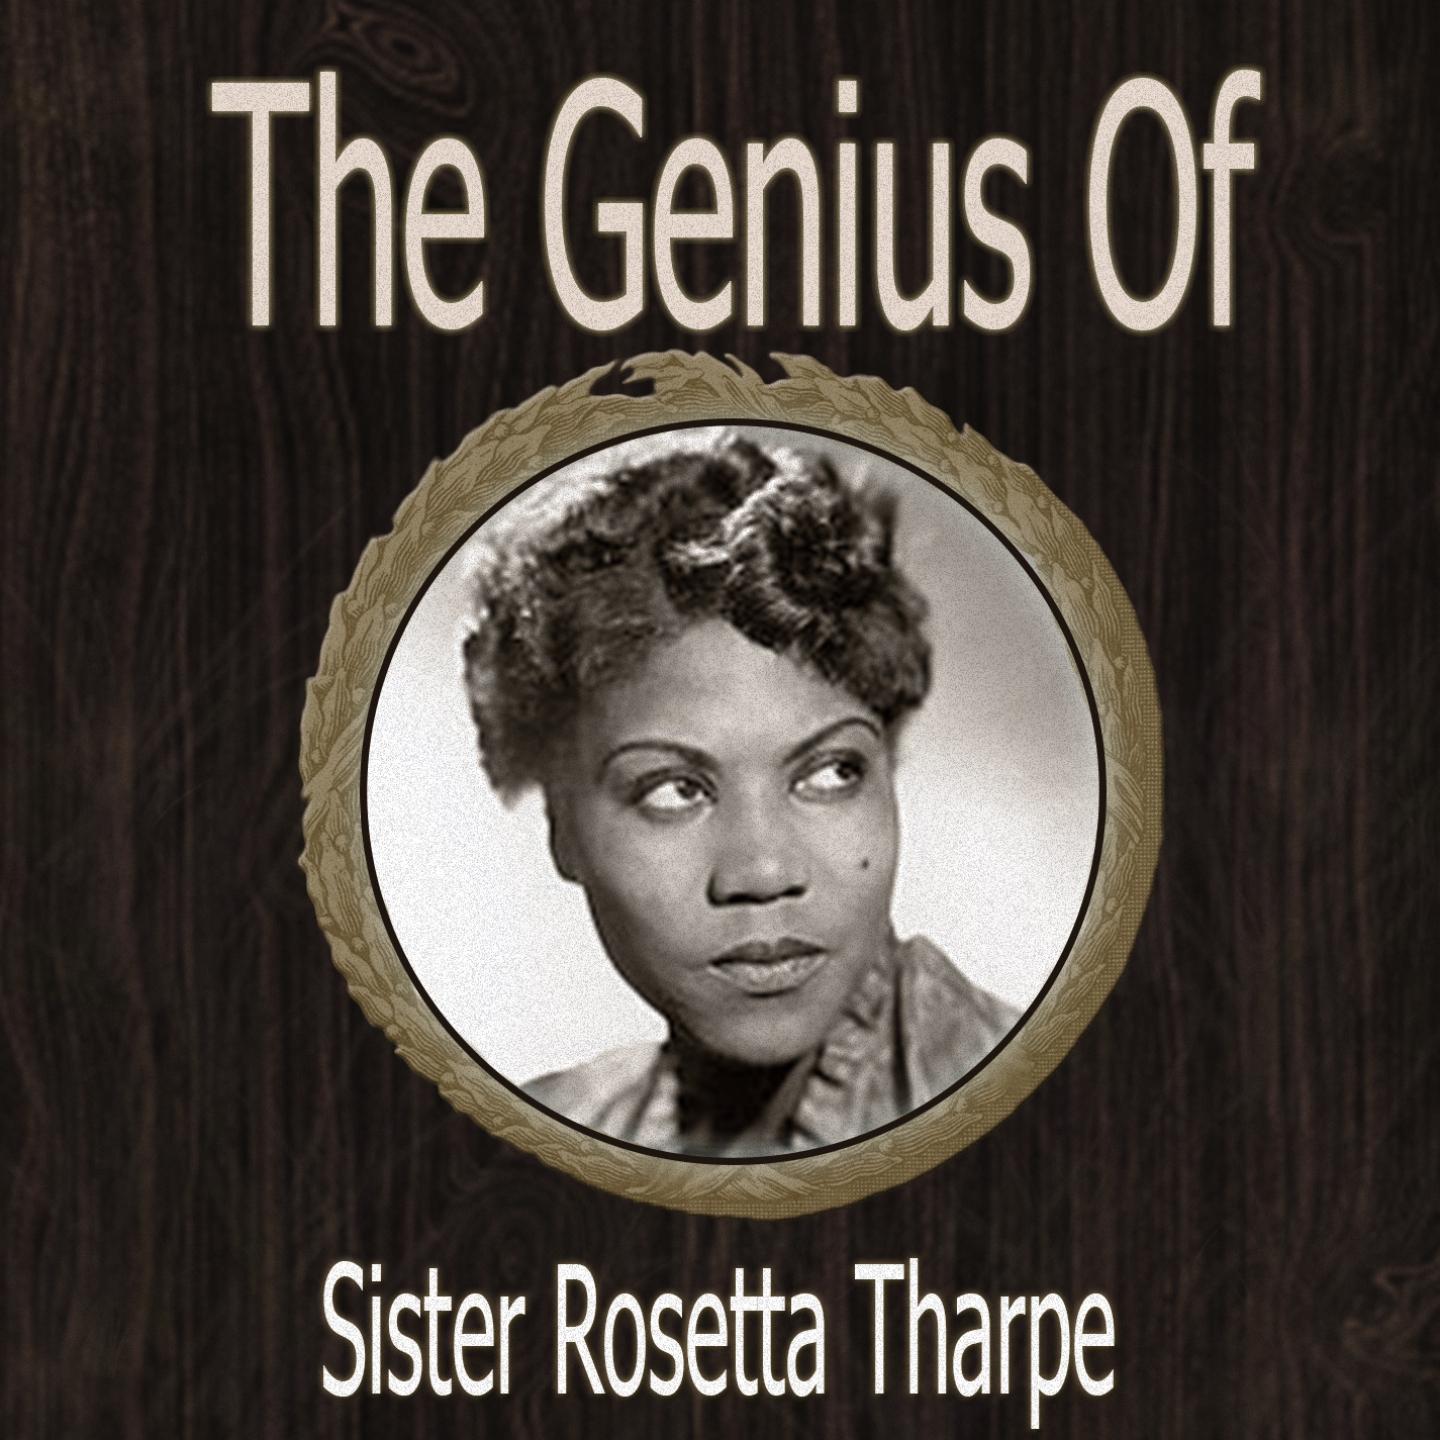 The Genius of Sister Rosetta Tharpe